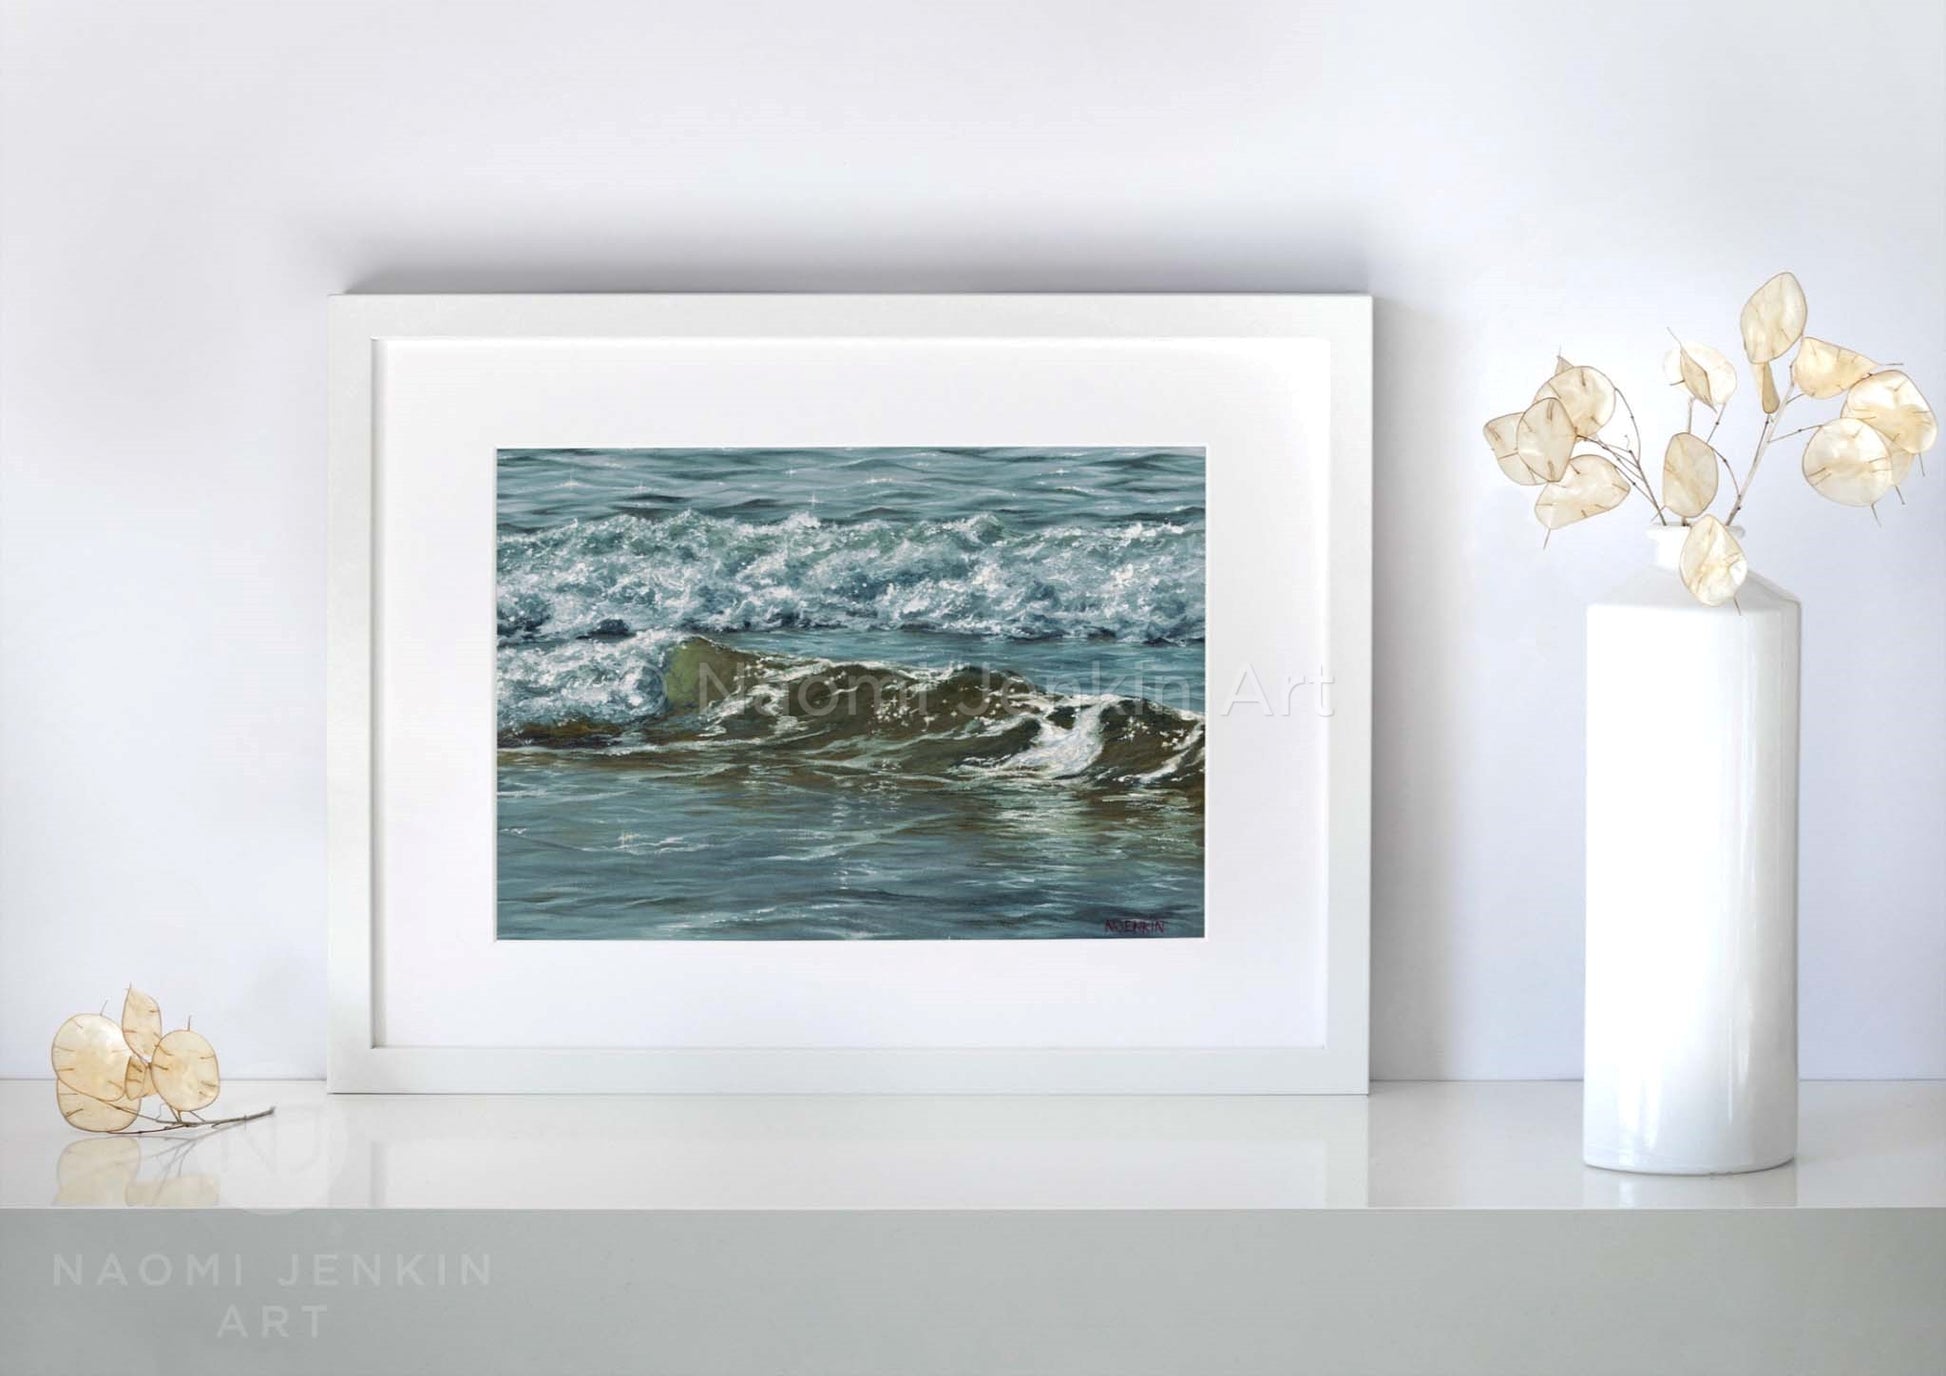 Seascape prints by Naomi Jenkin Art. 